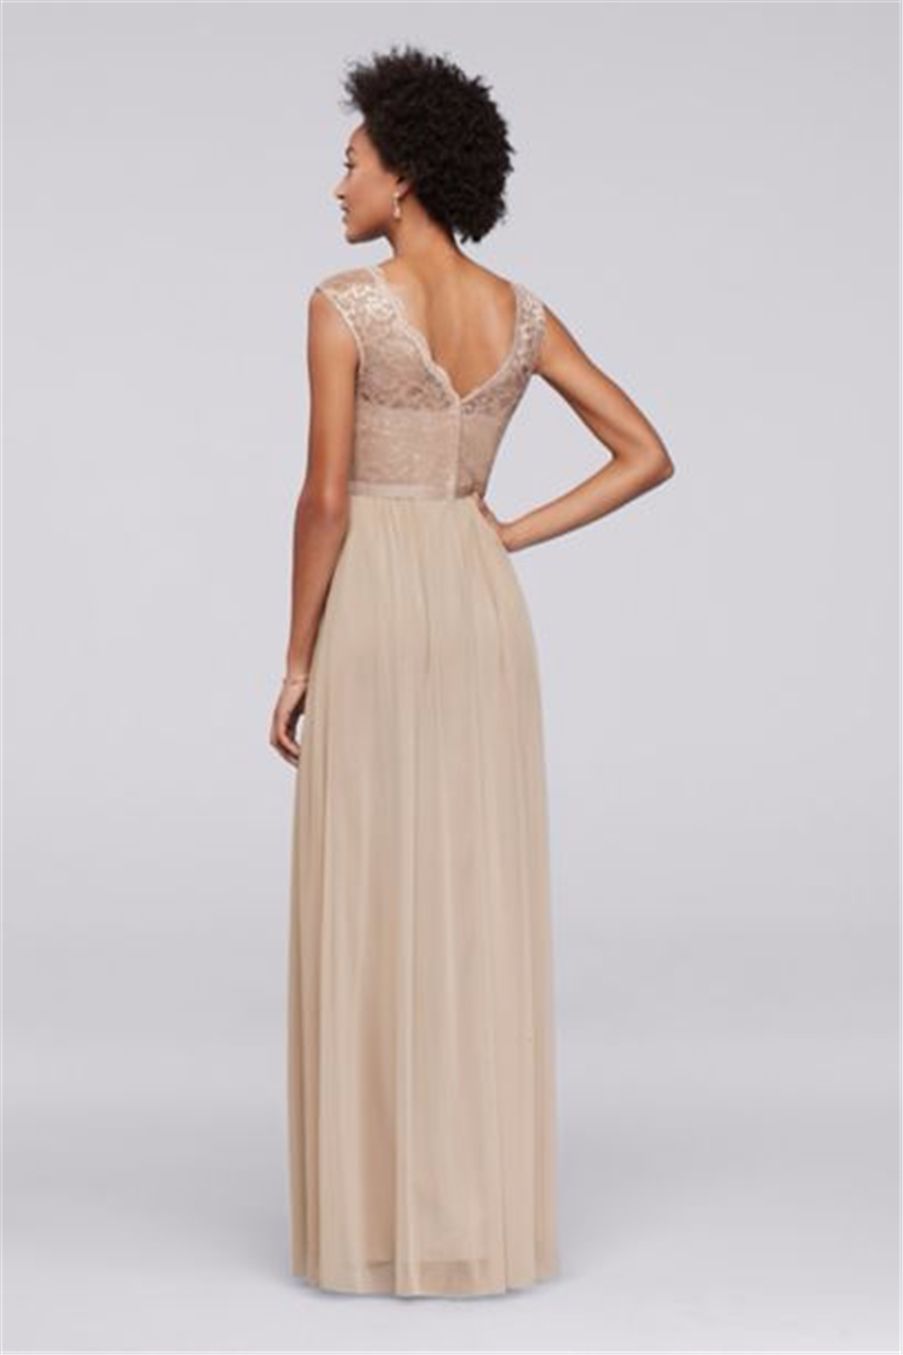 Long Champagne Chiffon BrideMaid платье с кружевным лифом F19328M свадебное платье вечернее платье вечернее платье